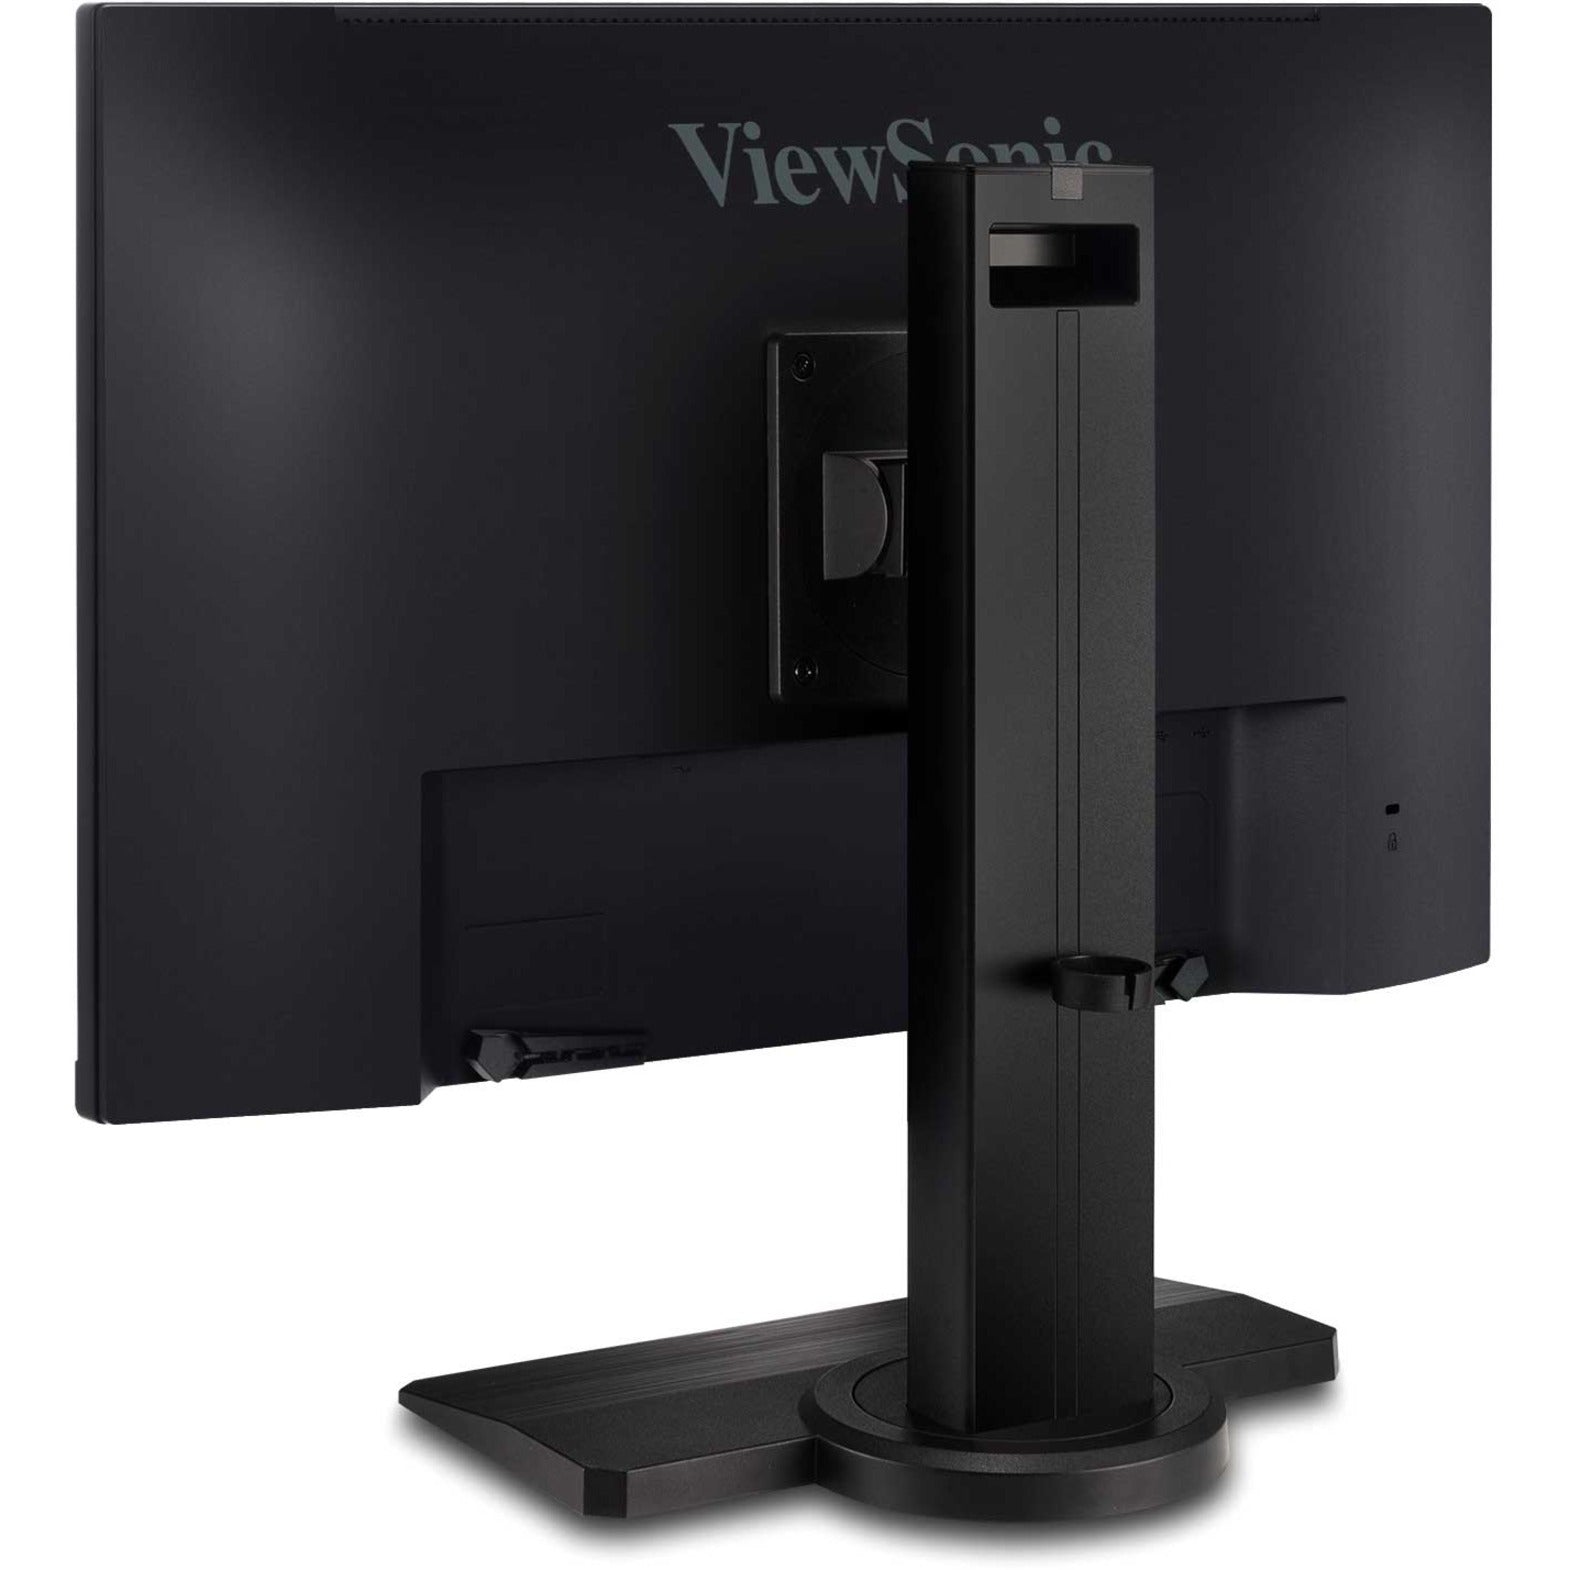 XG2431 - ViewSonic Monitor